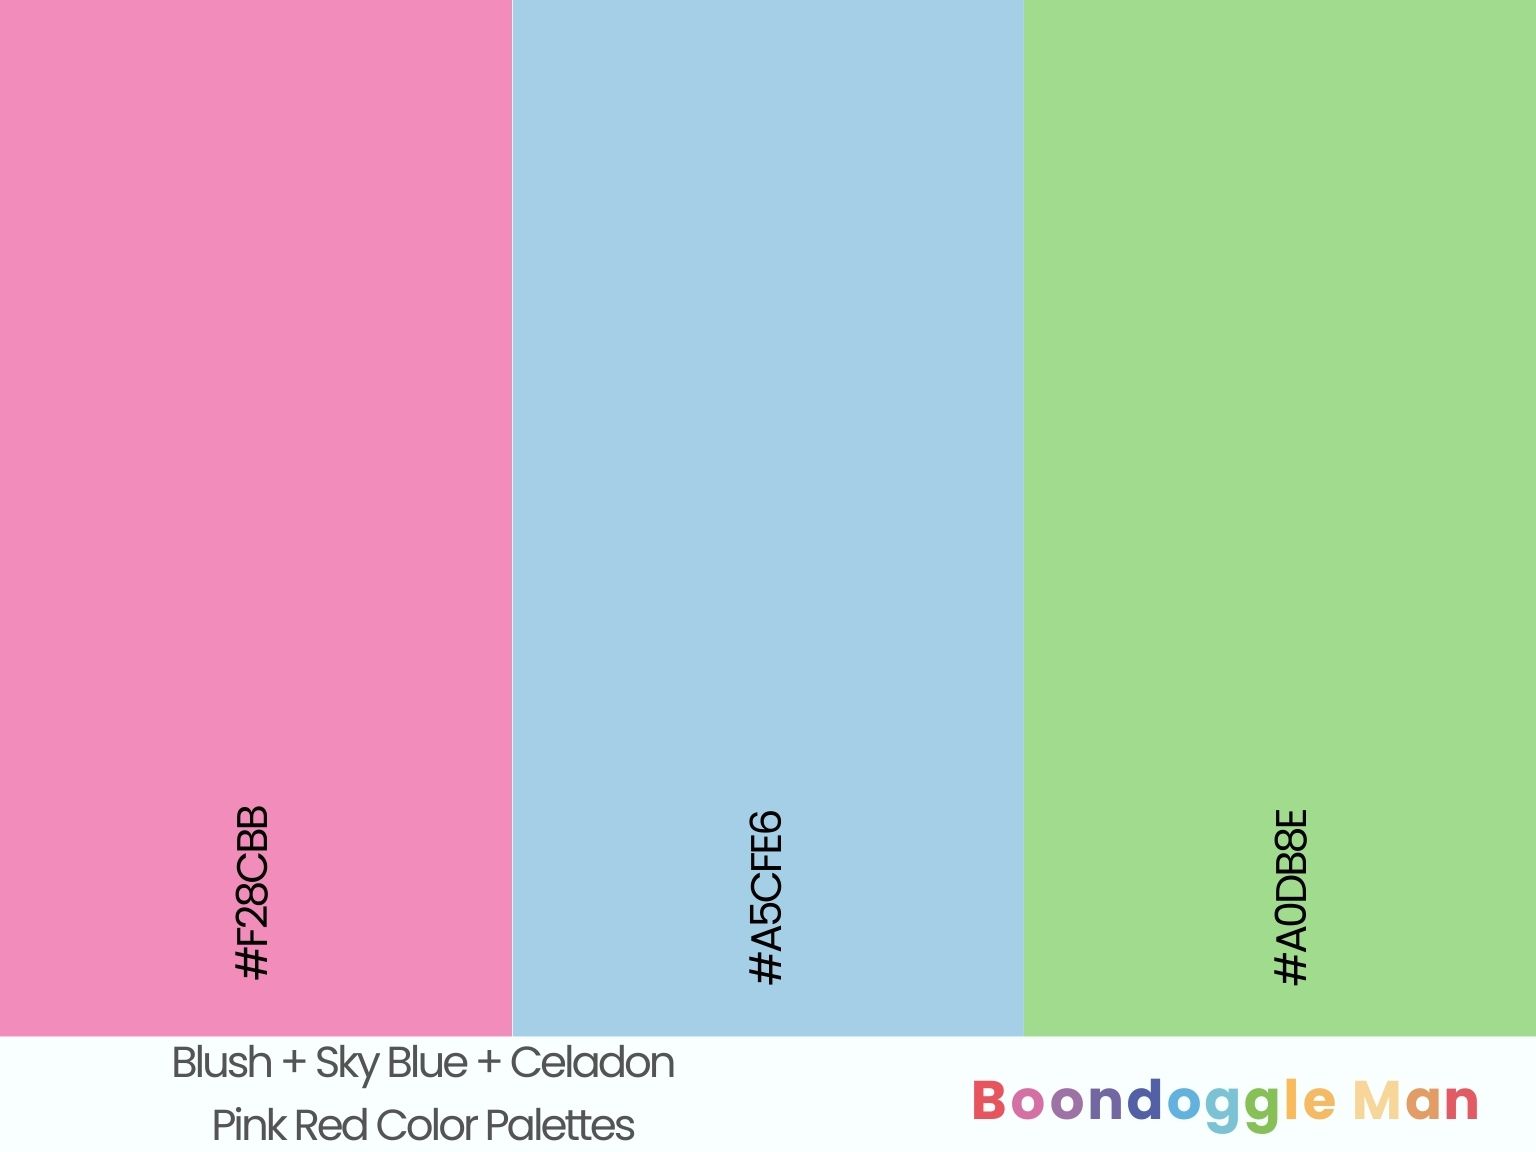 Blush + Sky Blue + Celadon